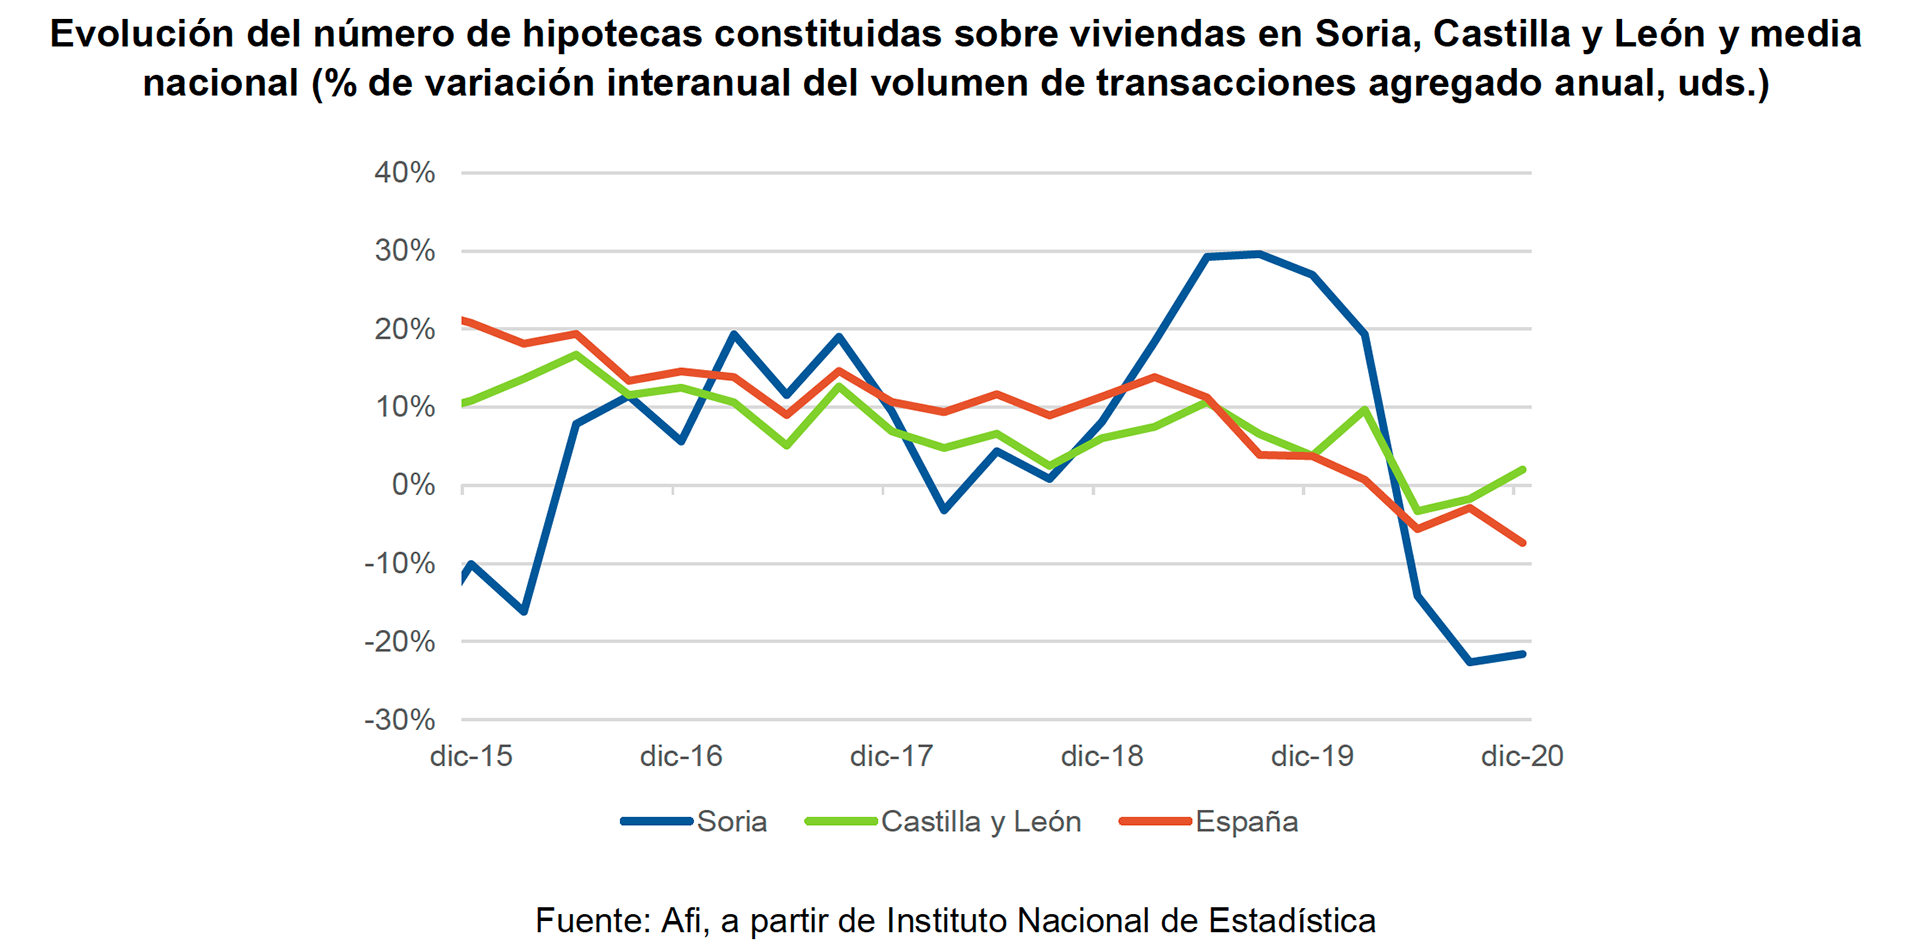 Evolución del número de hipotecas constituidas sobre viviendas en Soria, Castilla y León y media nacional.